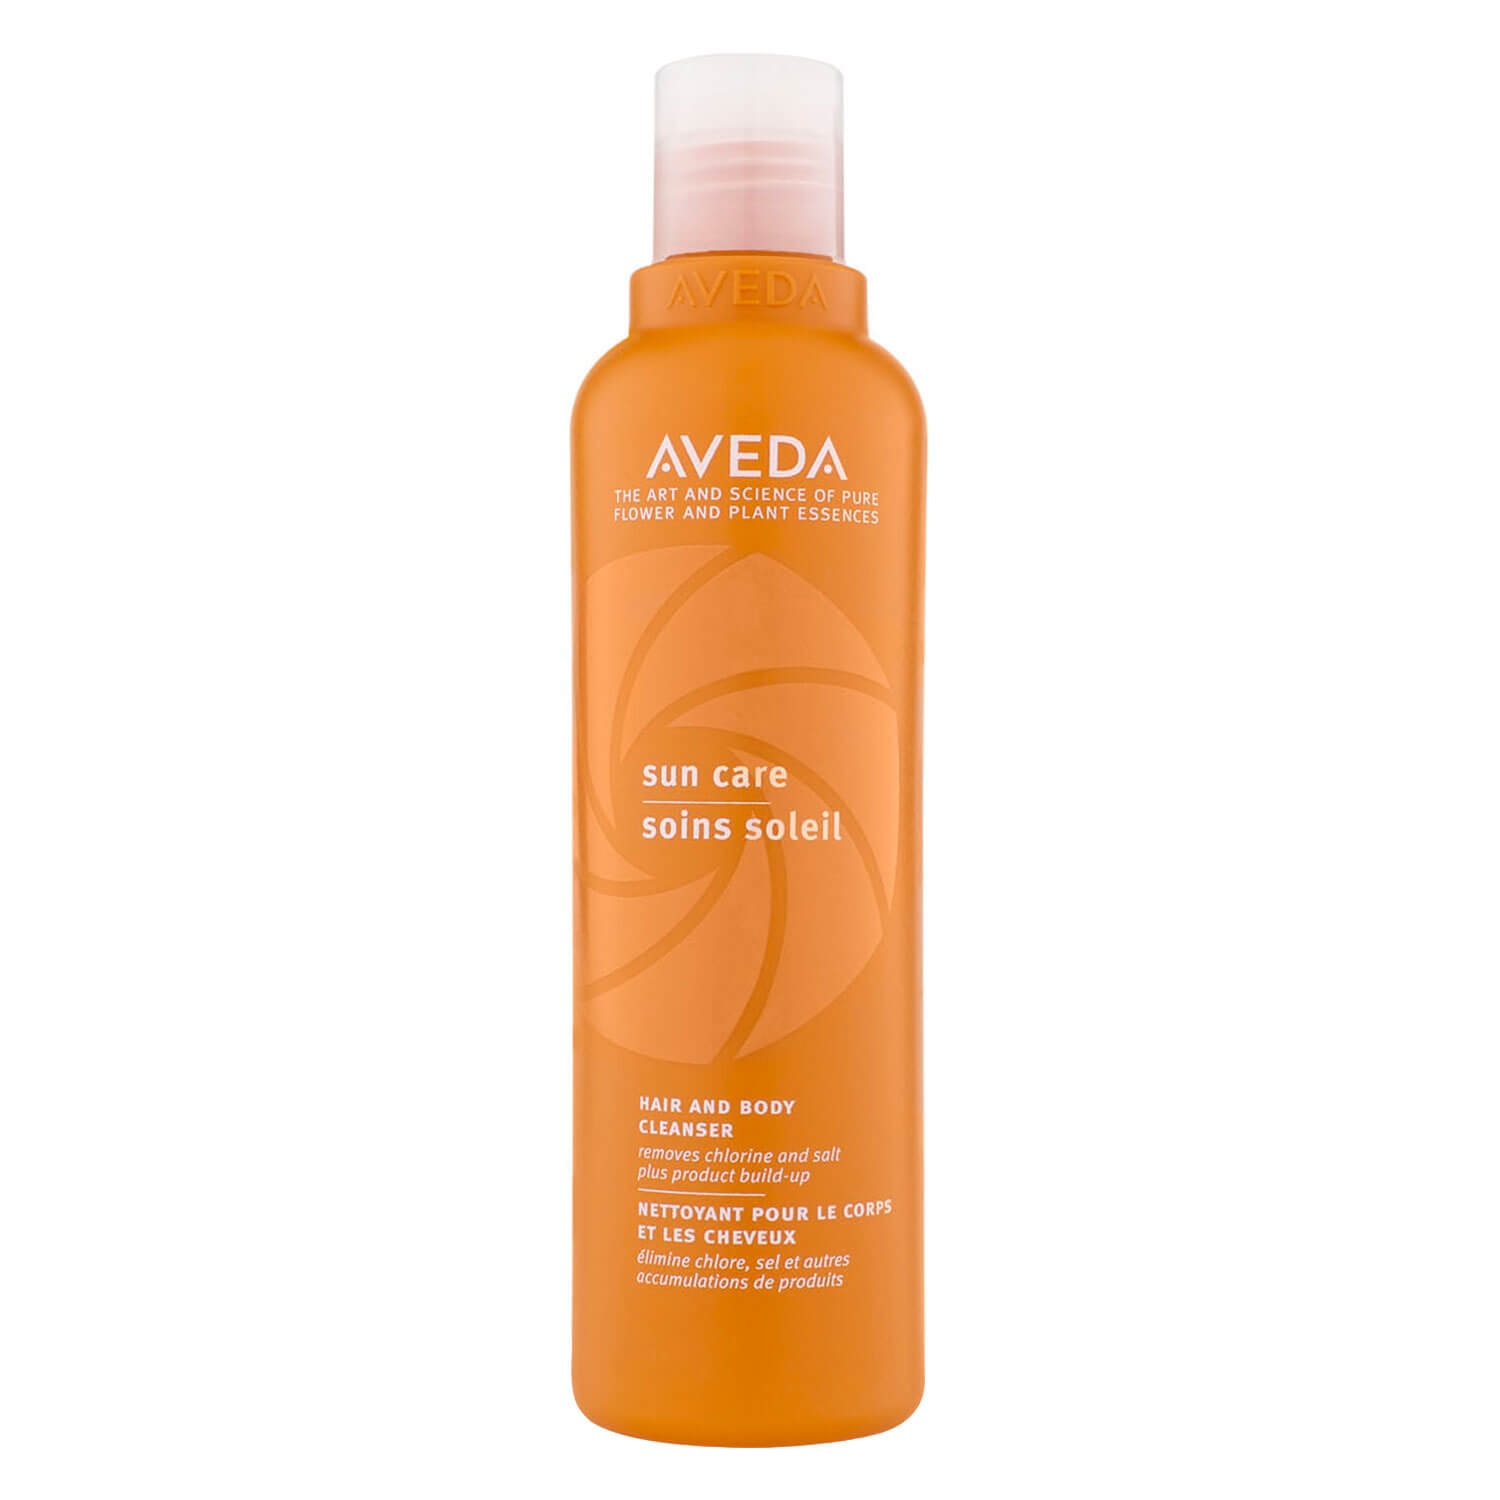 Produktbild von aveda sun care - hair and body cleanser